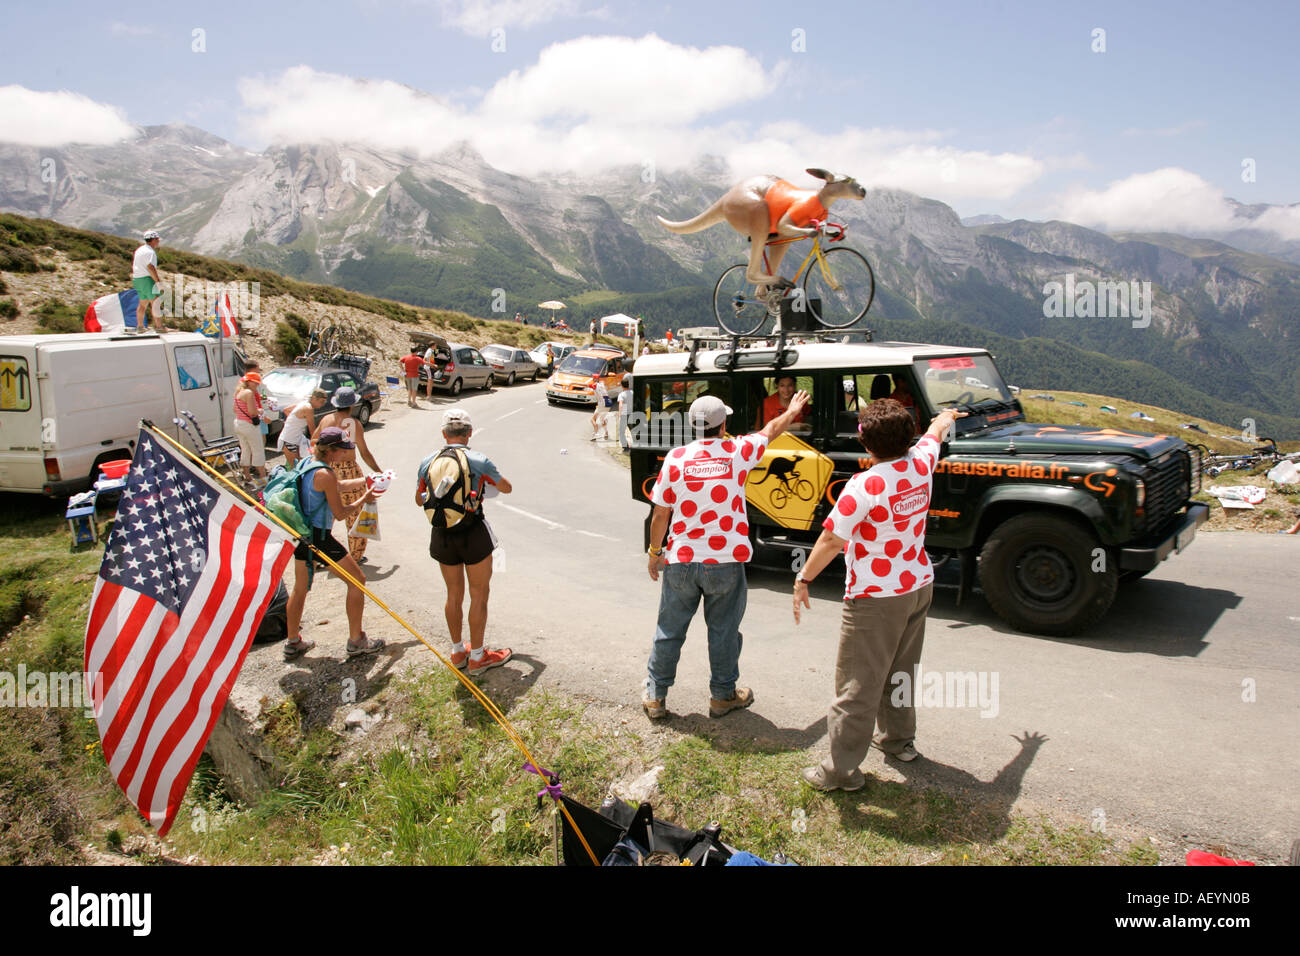 Tour de France Juli 2005, Col d' Aubisque in den Pyrenäen Frankreich - Zuschauer jagen nach Werbegeschenken von der Tour Cavalcade. Stockfoto